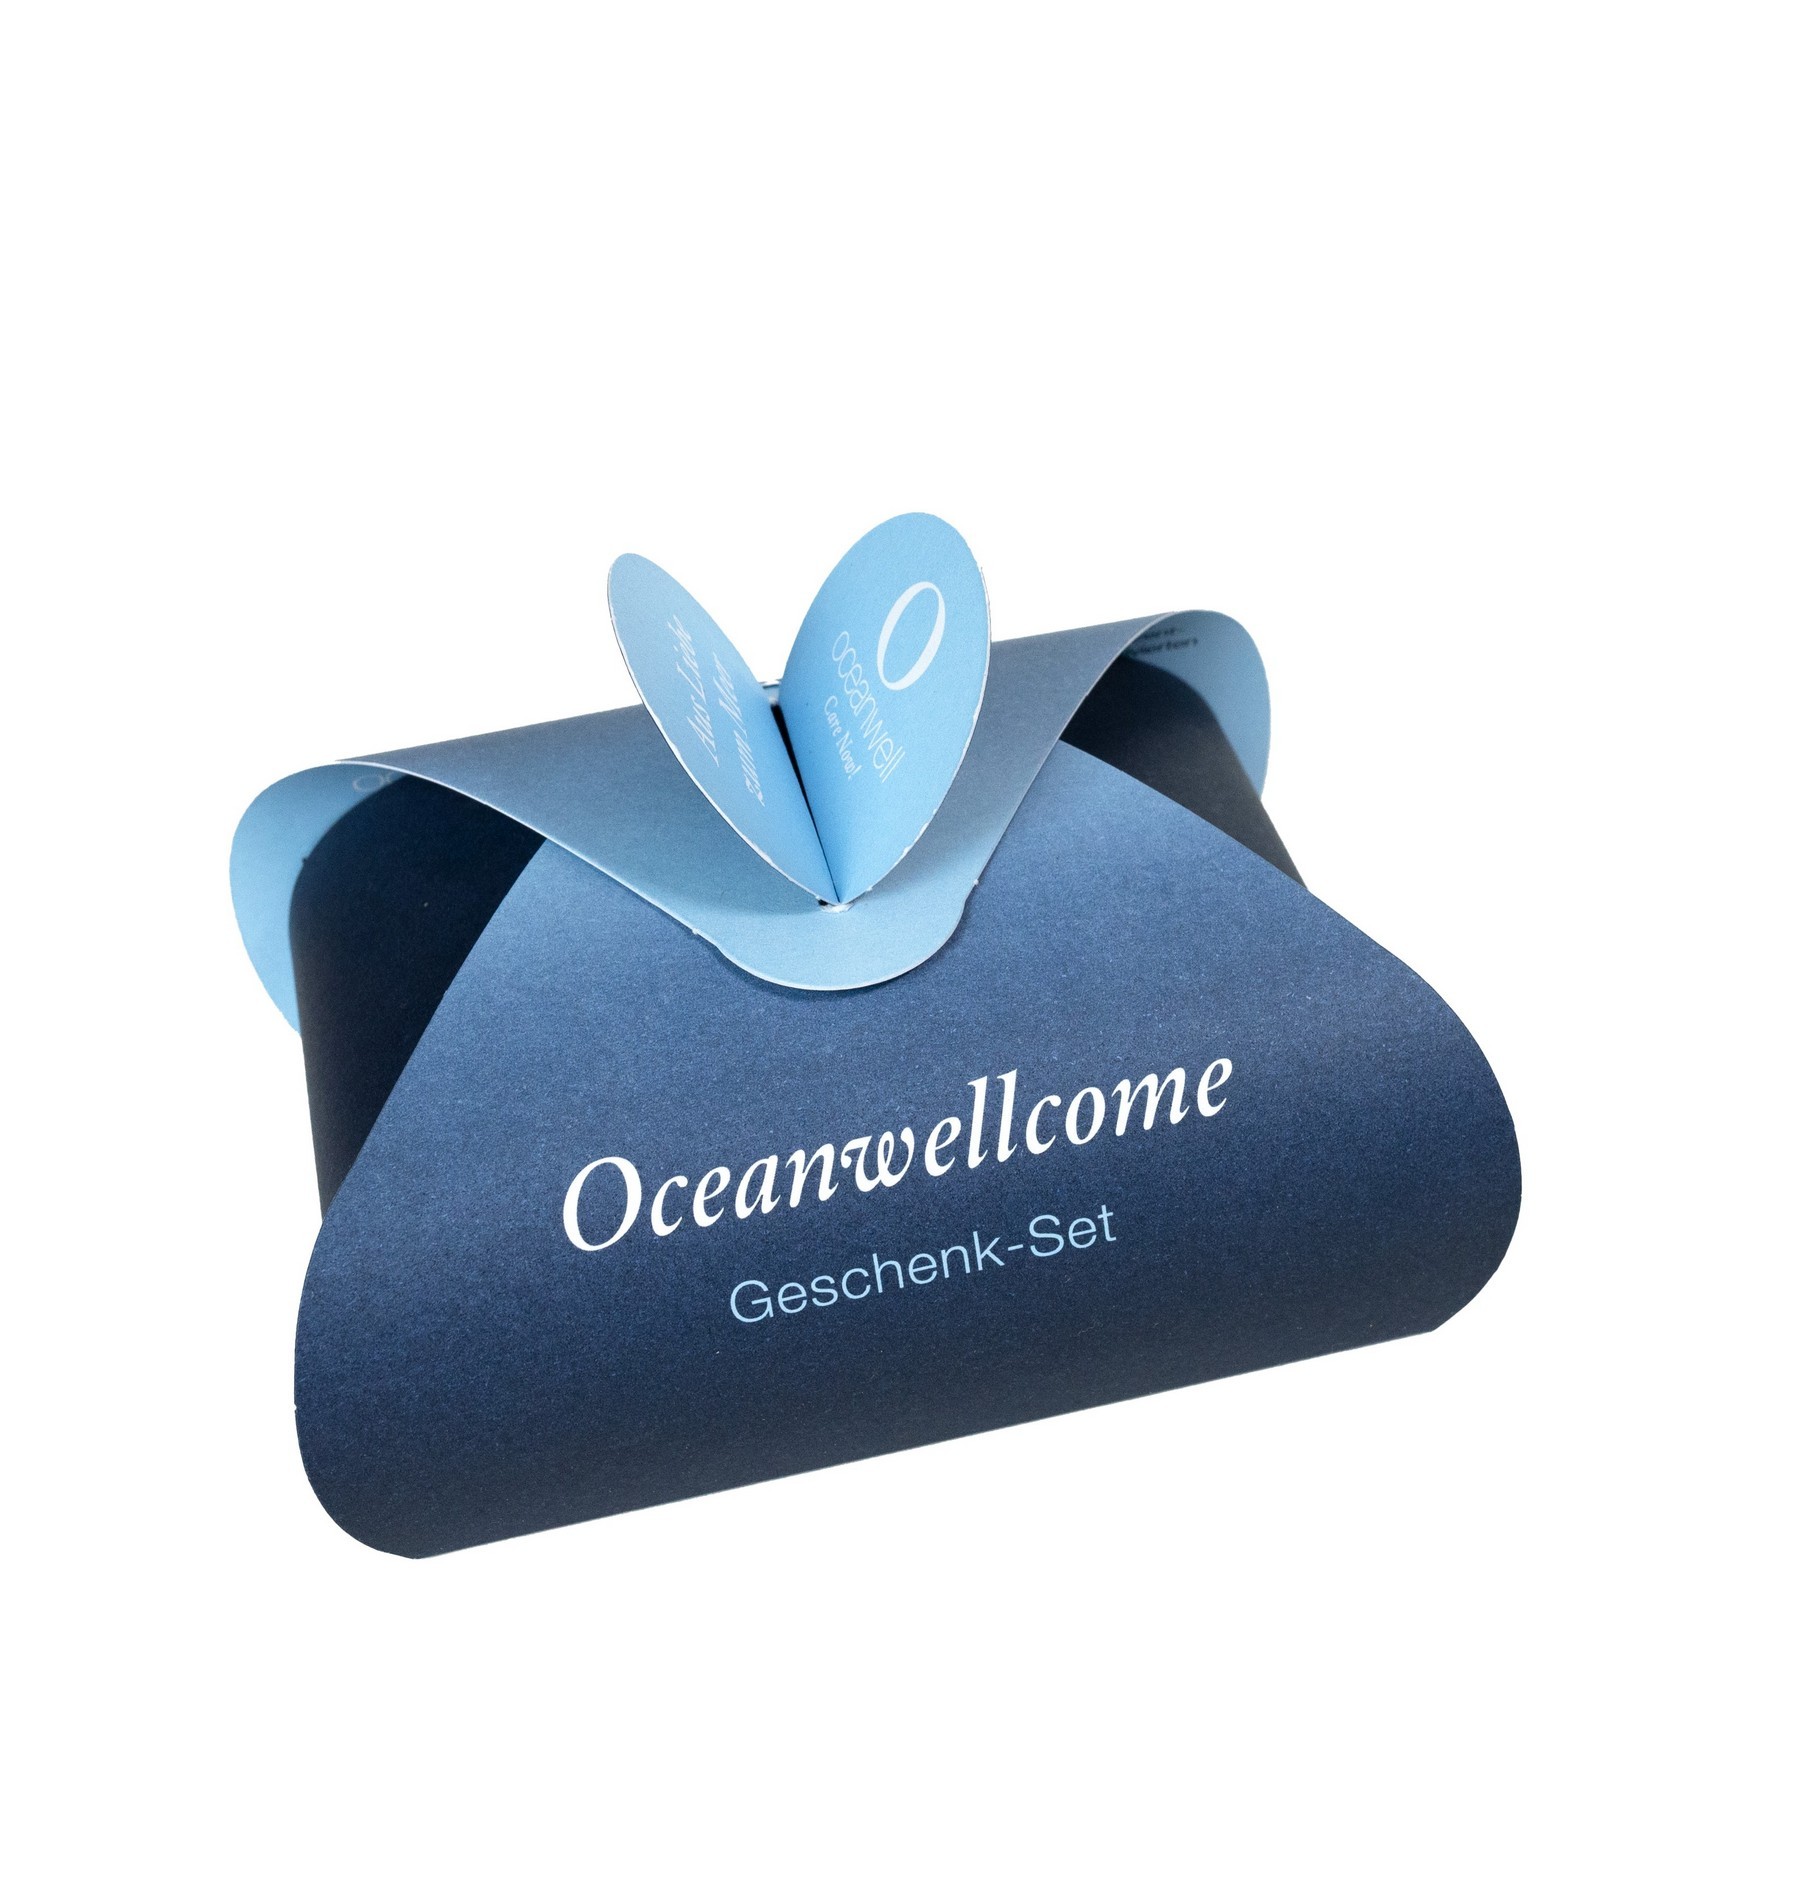 Oceanwellcome Geschenk-Set